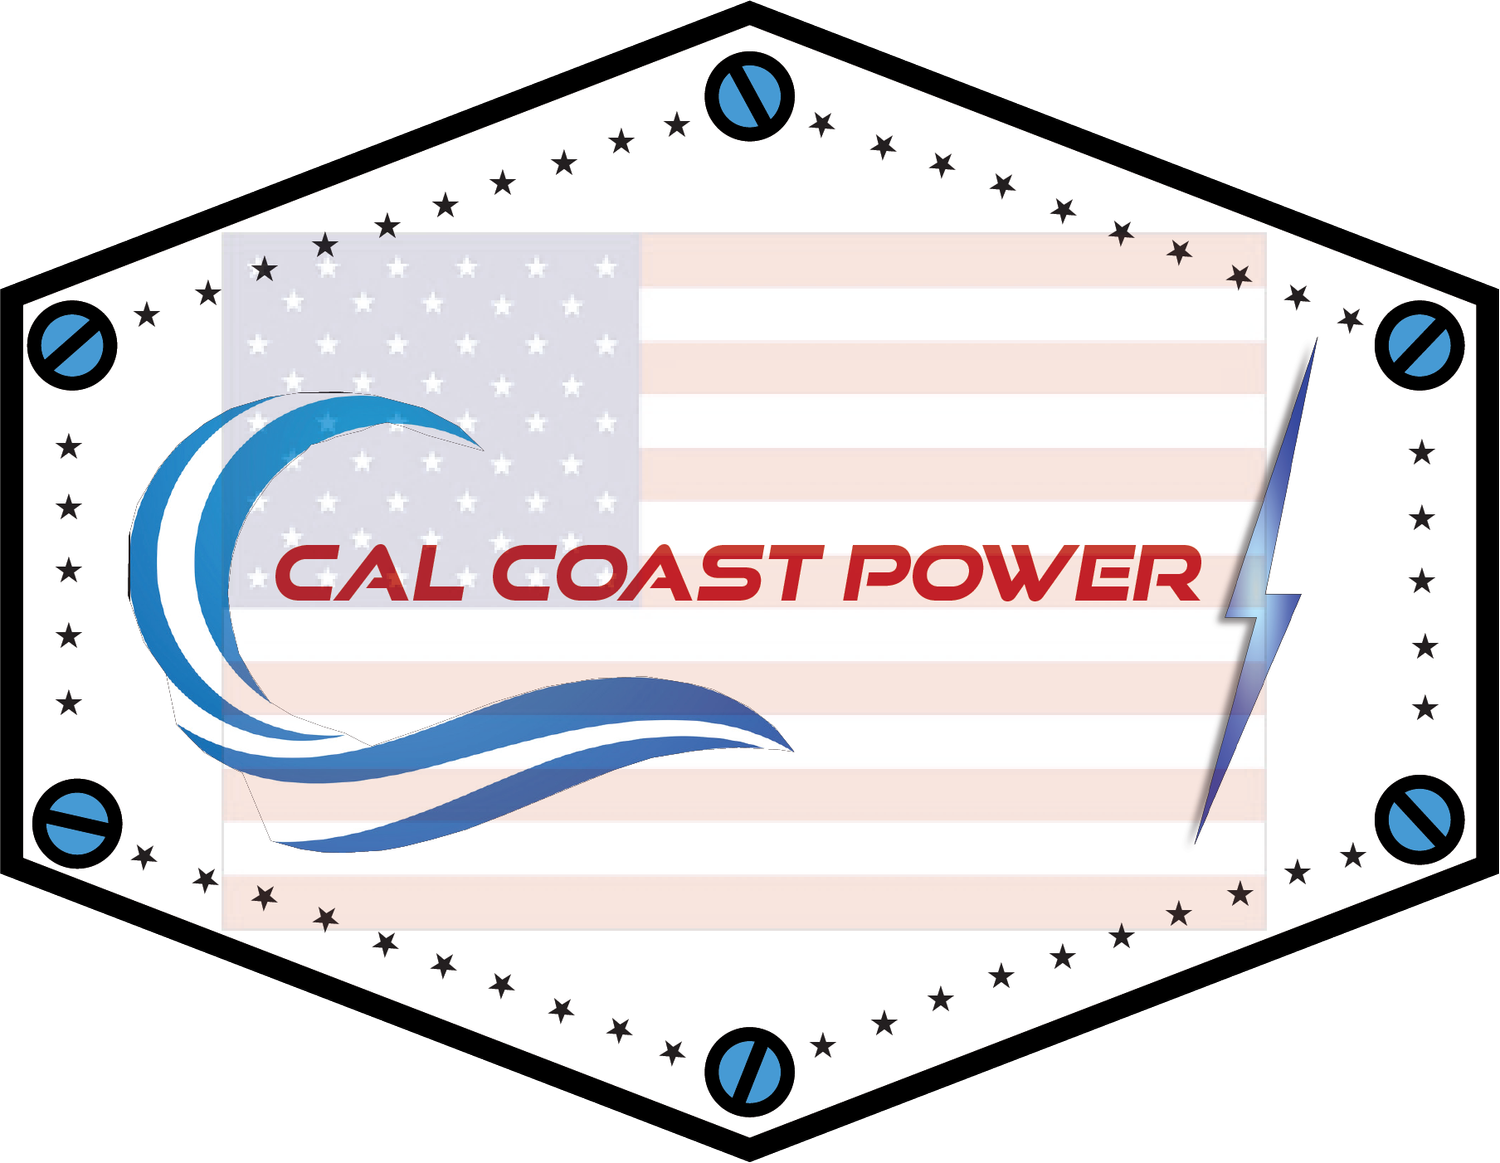 Cal Coast Power